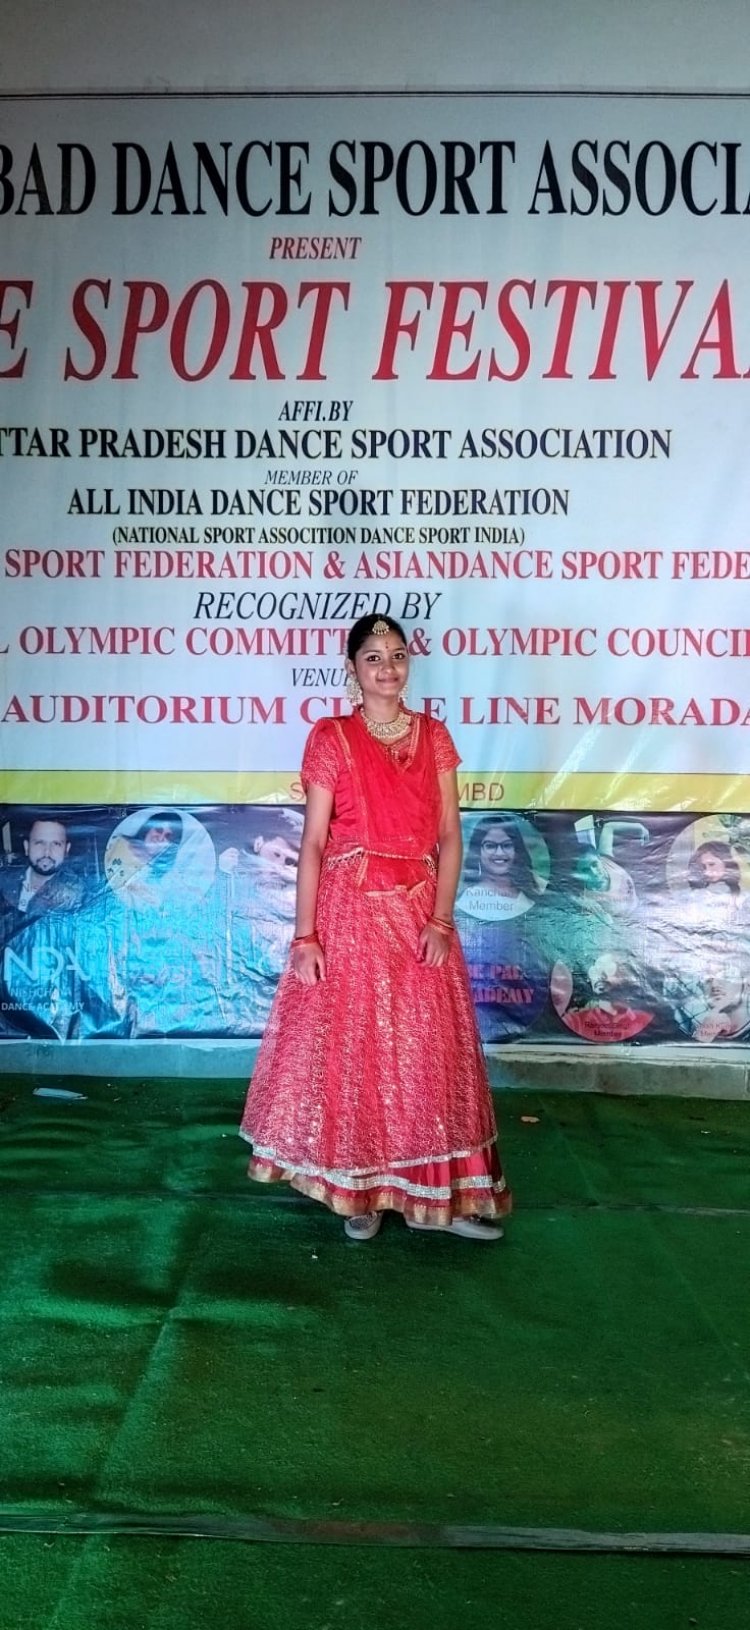 भारतीय संस्कृति के उत्थान में बालिकाओं ने नृत्य के माध्यम से लिया हिस्सा।